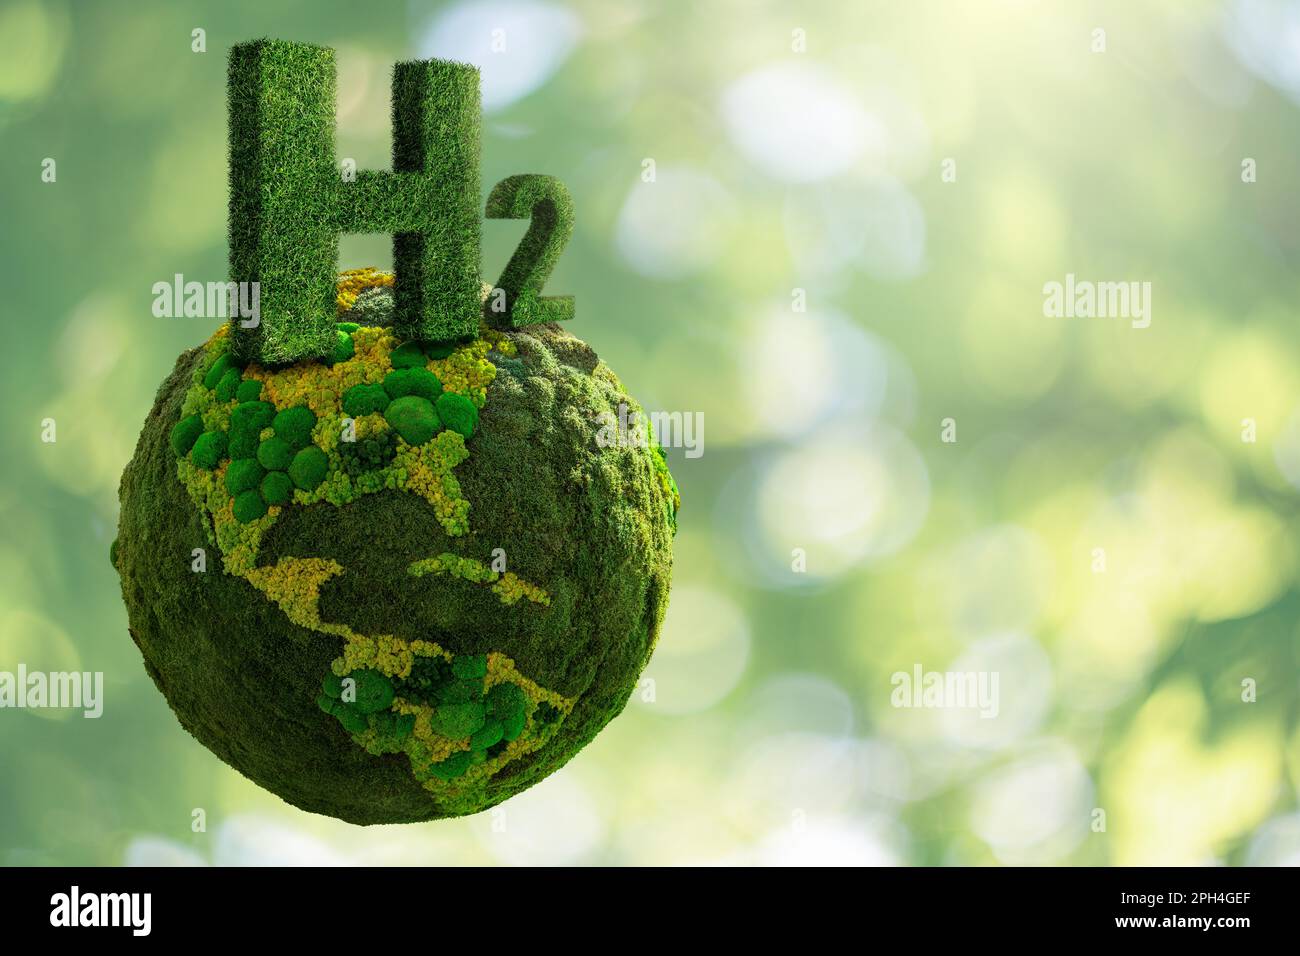 Symbole de l'hydrogène H2 de l'herbe et de la planète verte Terre de mos. Photo de haute qualité Banque D'Images